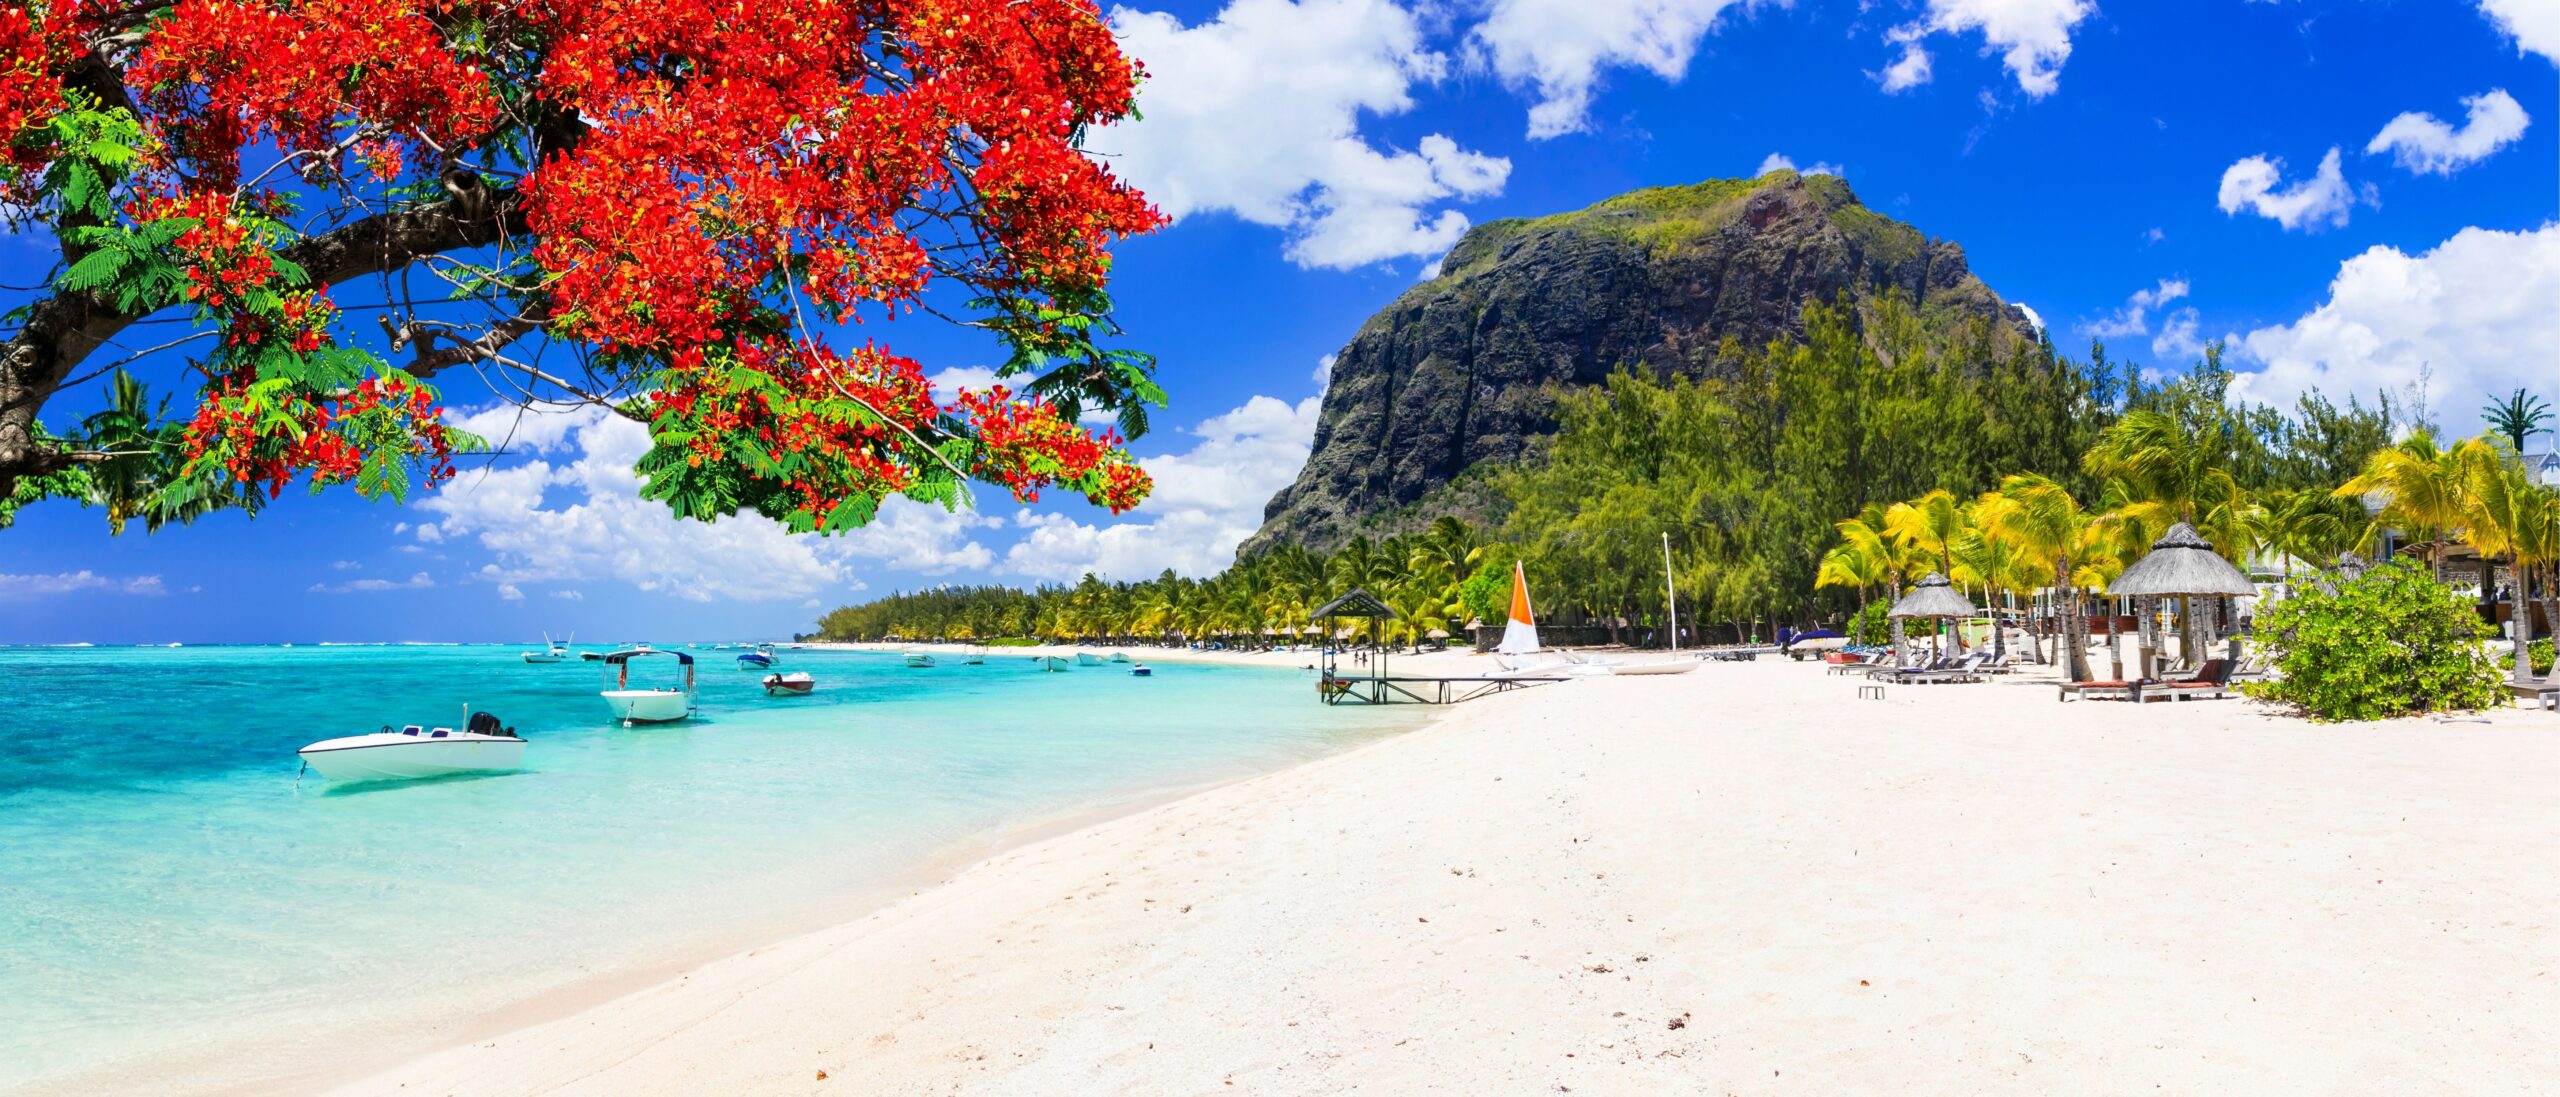 Mauritius beach day